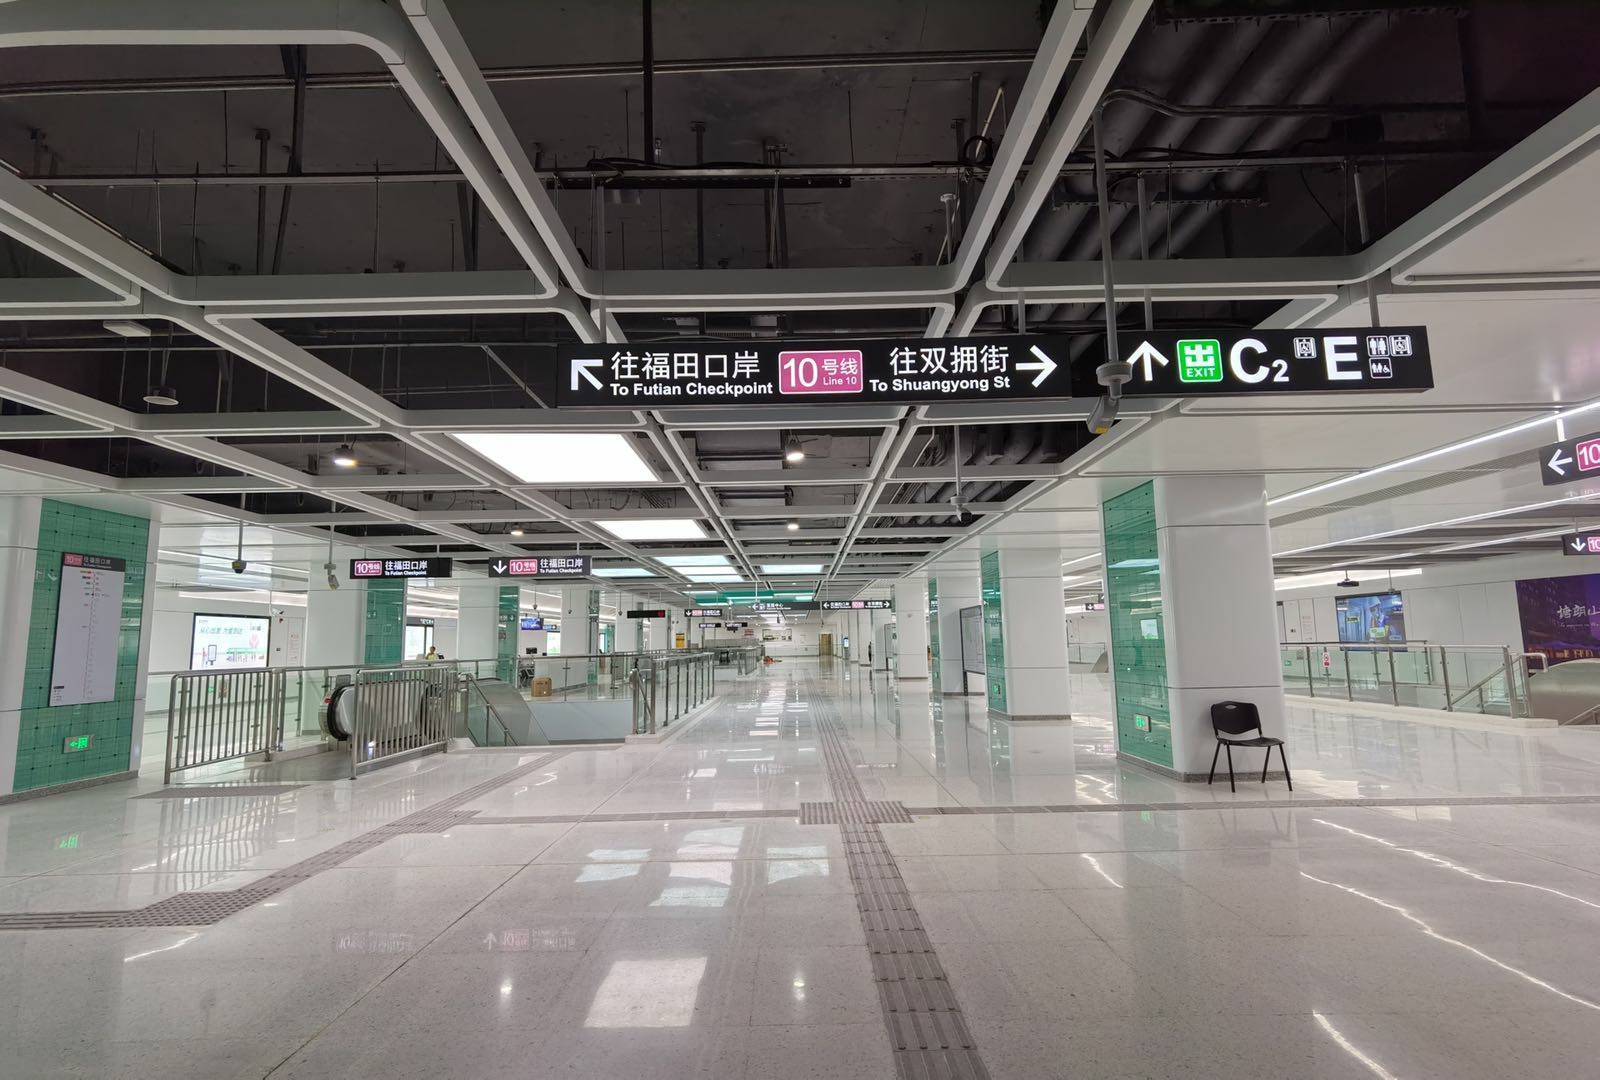 深圳地铁10号线将于8月18日开通设立华为站